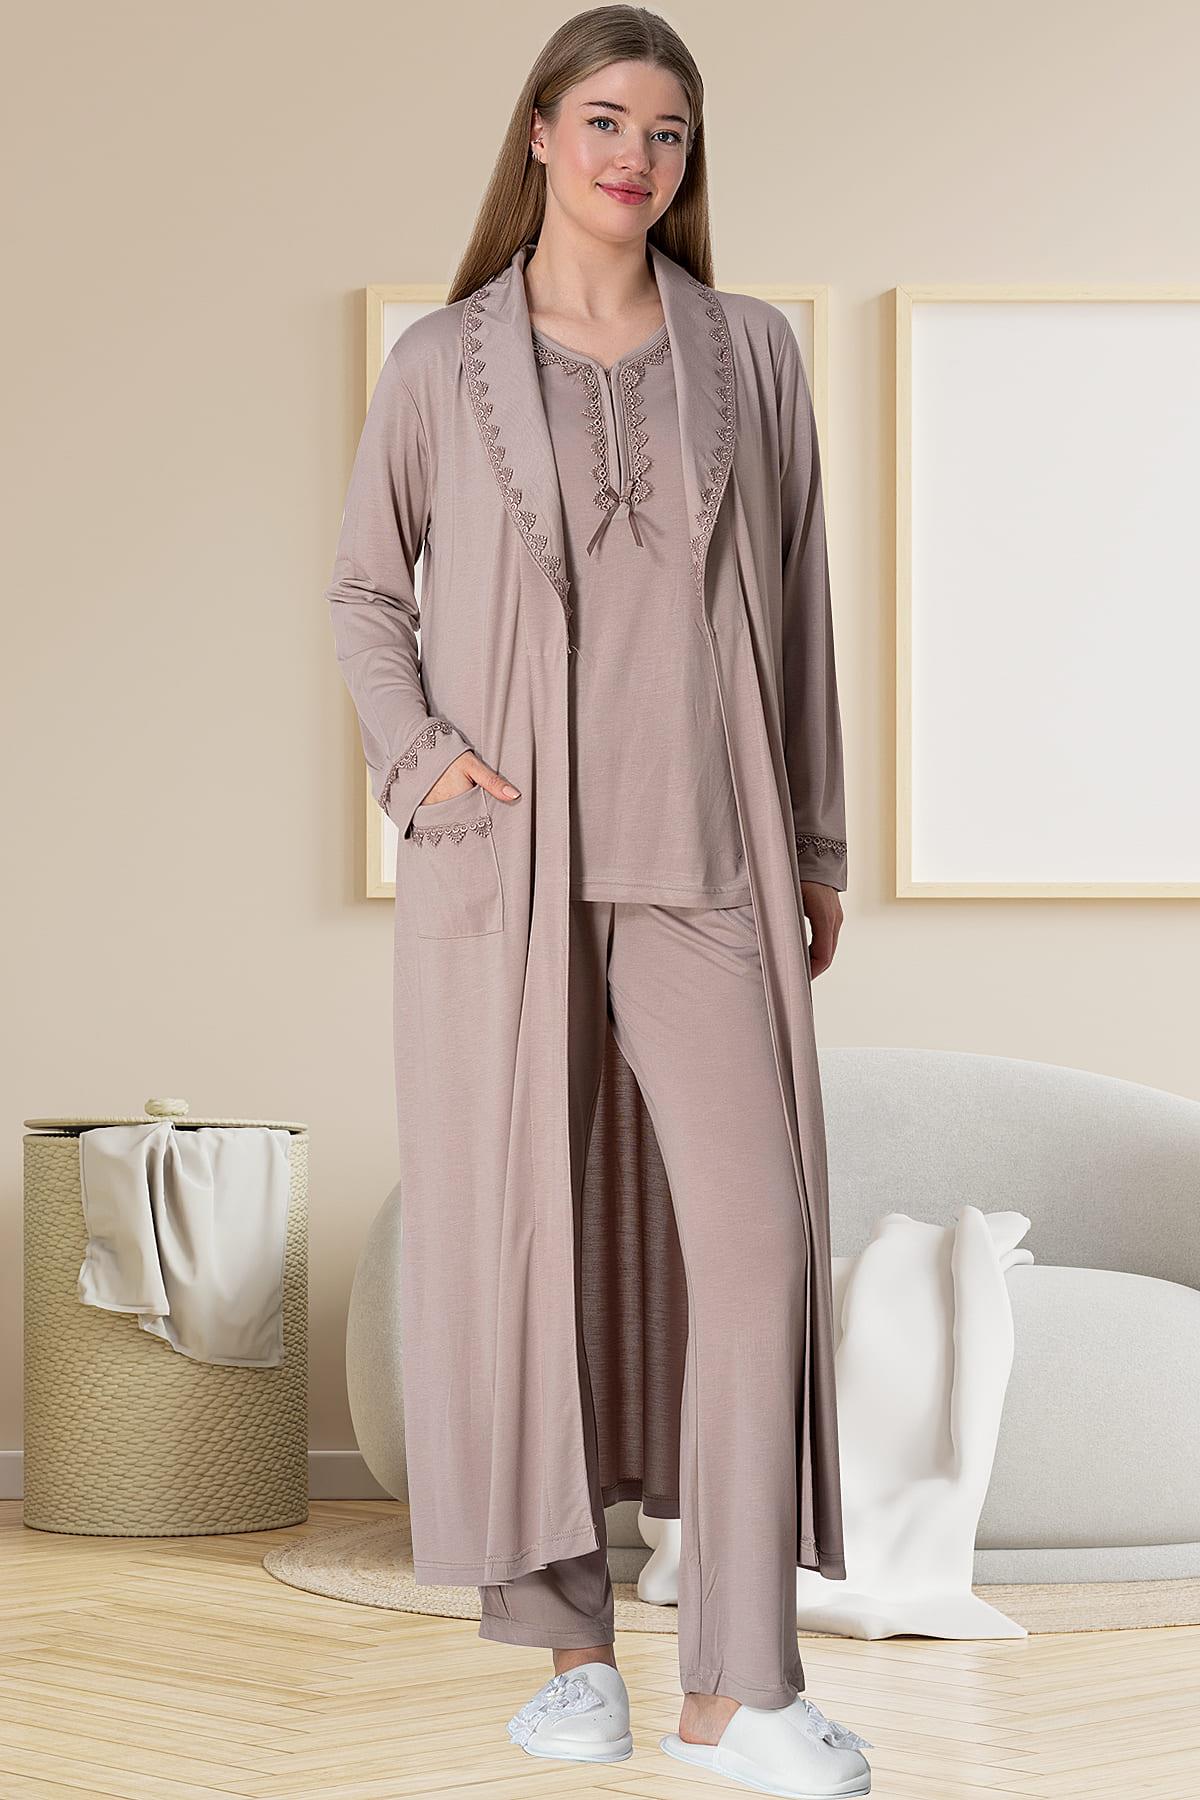 Mecit 5910 Vizon Büyük Beden Kadın Sabahlıklı Pijama Takımı | Mecit Pijama